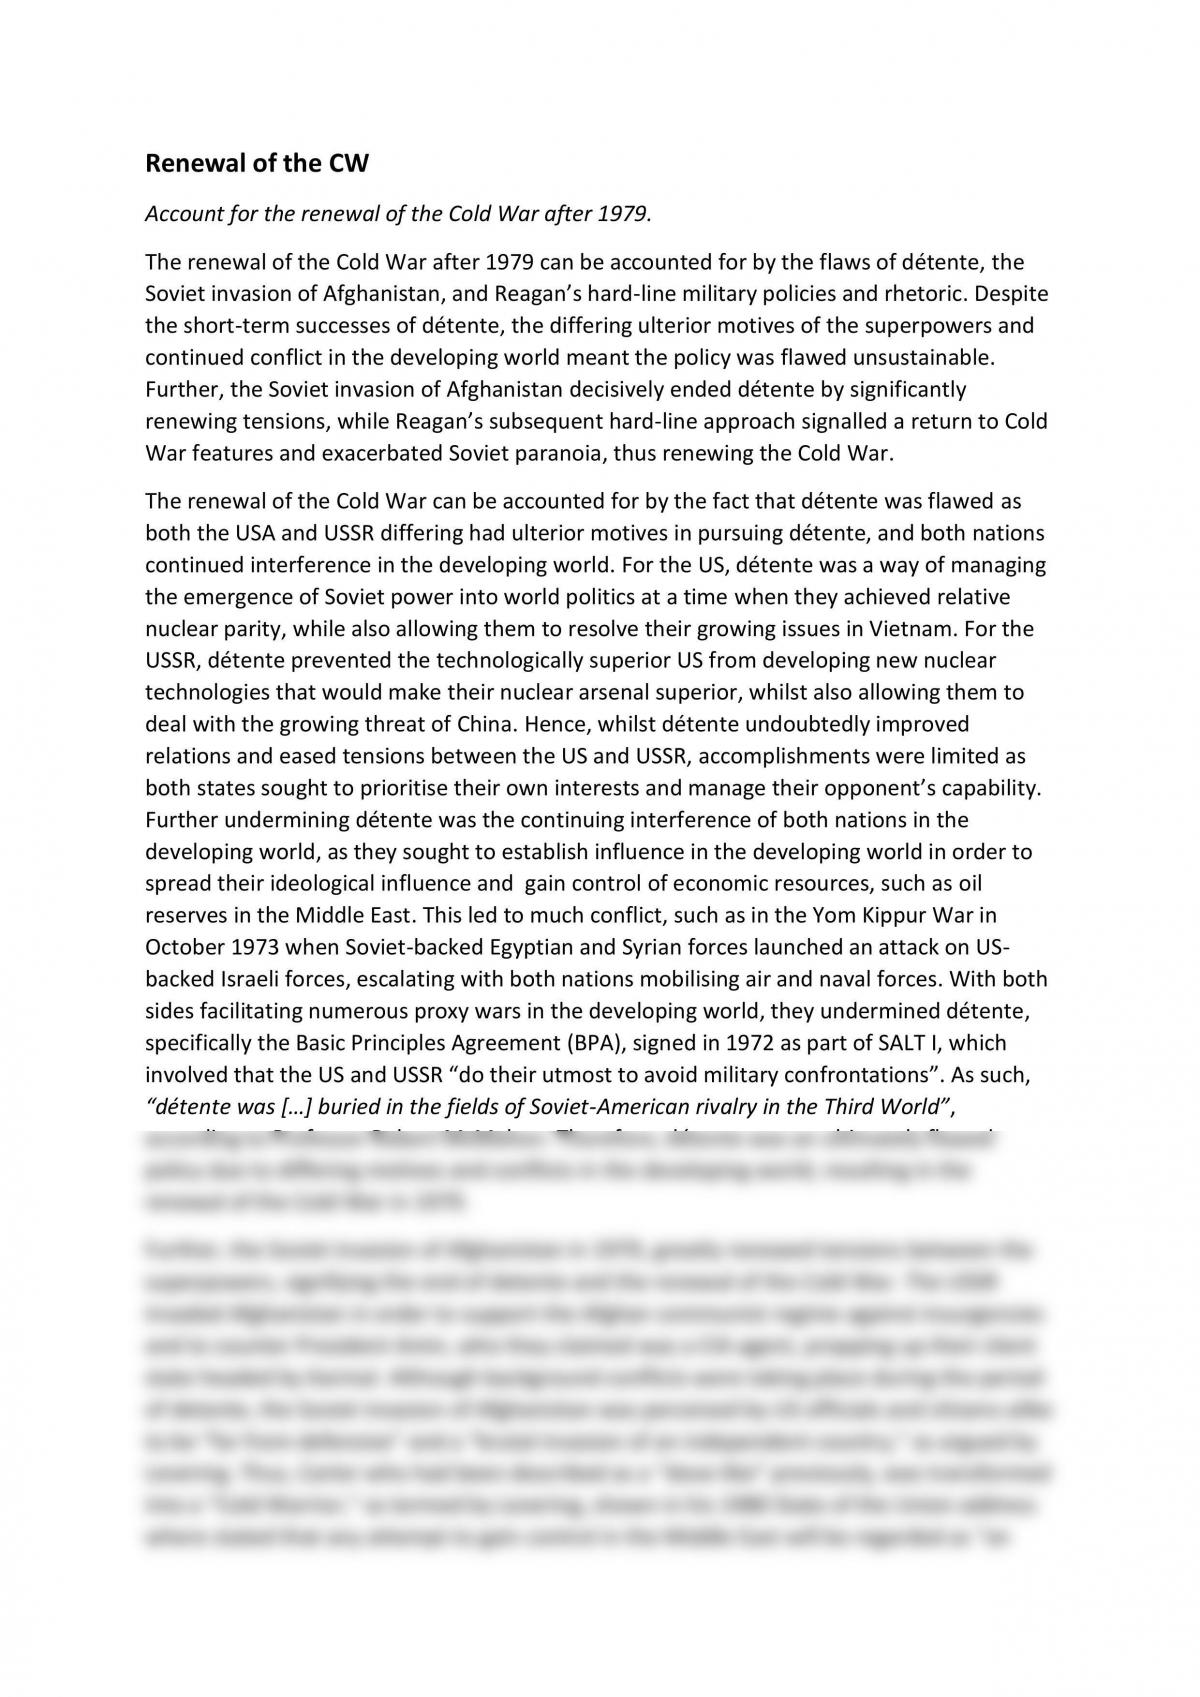 cold war essay grade 12 pdf download